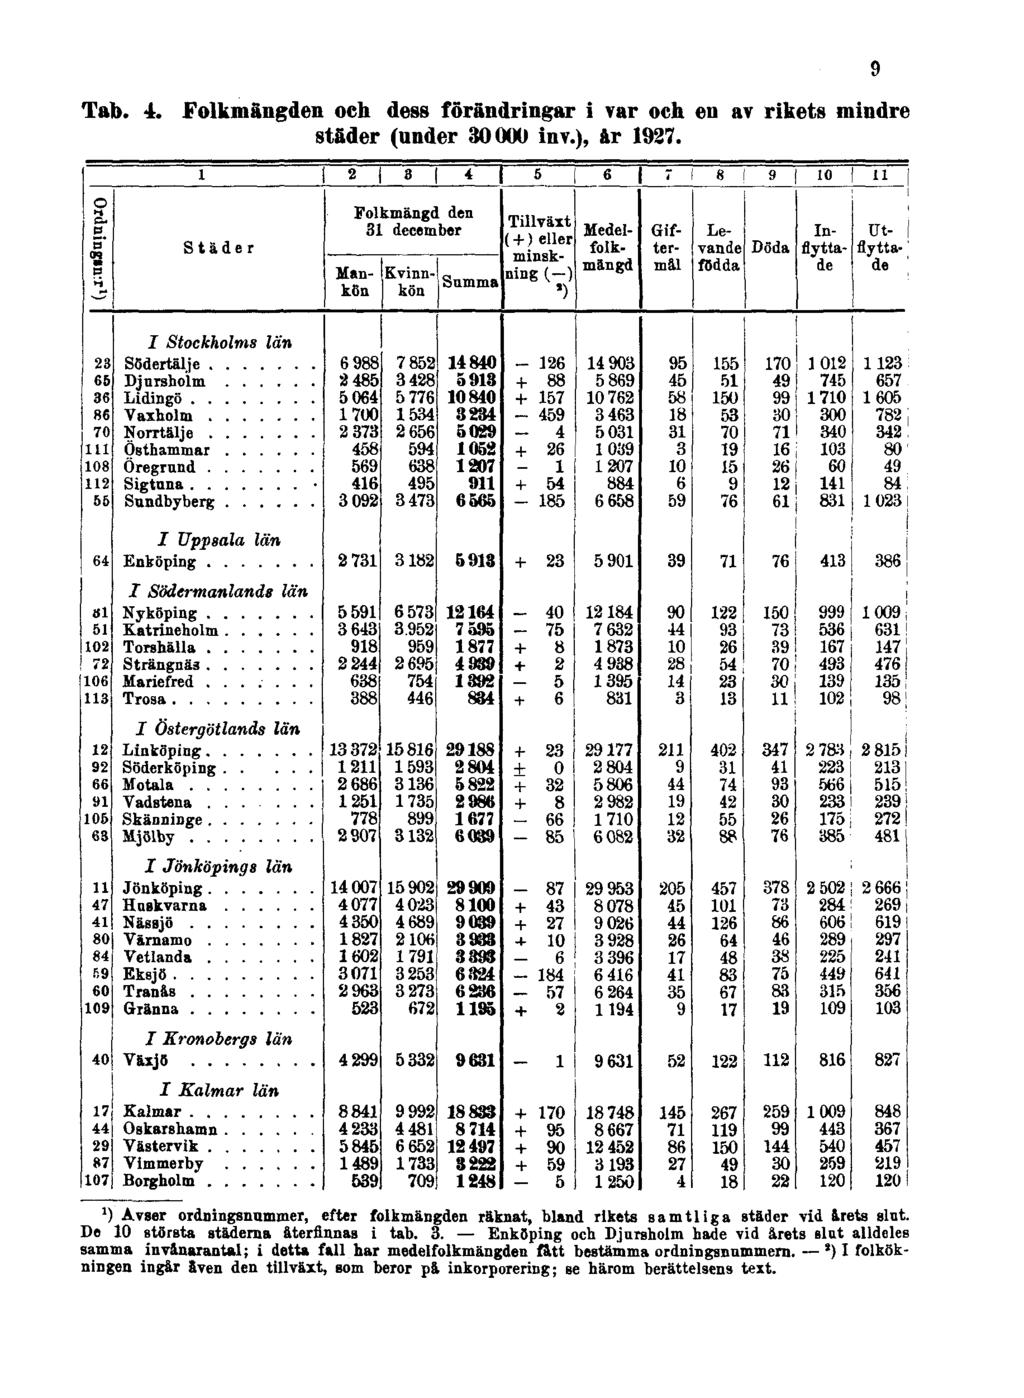 Tab. 4. Folkmängden och dess förändringar i var och en av rikets mindre städer (under 30000 inv.), år 1927.